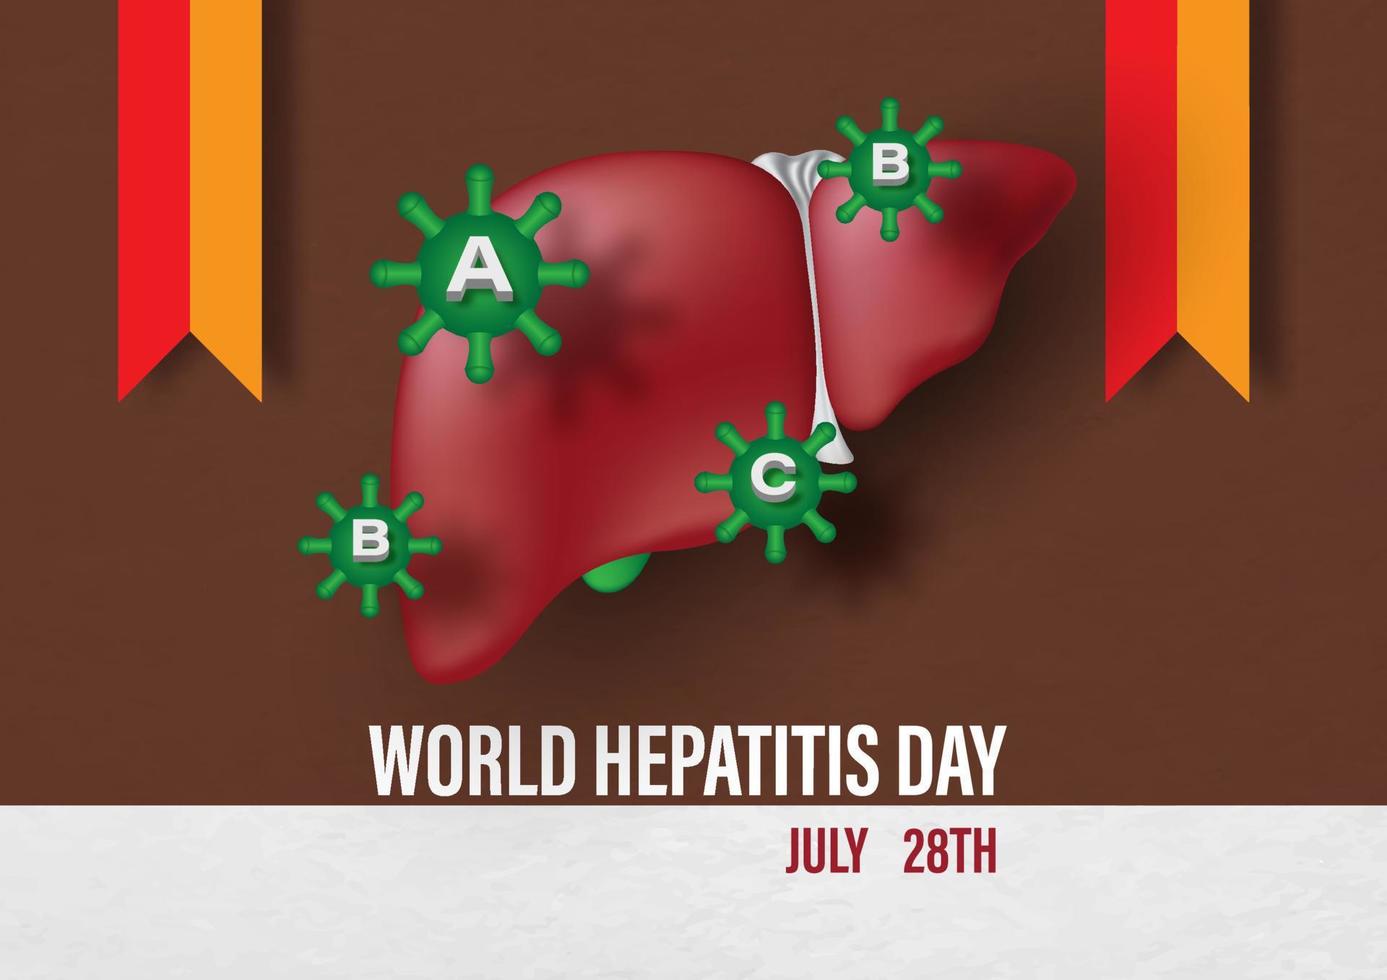 símbolo del virus de la hepatitis en el hígado humano con cintas de campaña y texto del día mundial de la hepatitis aislado en papel marrón y blanco. vector